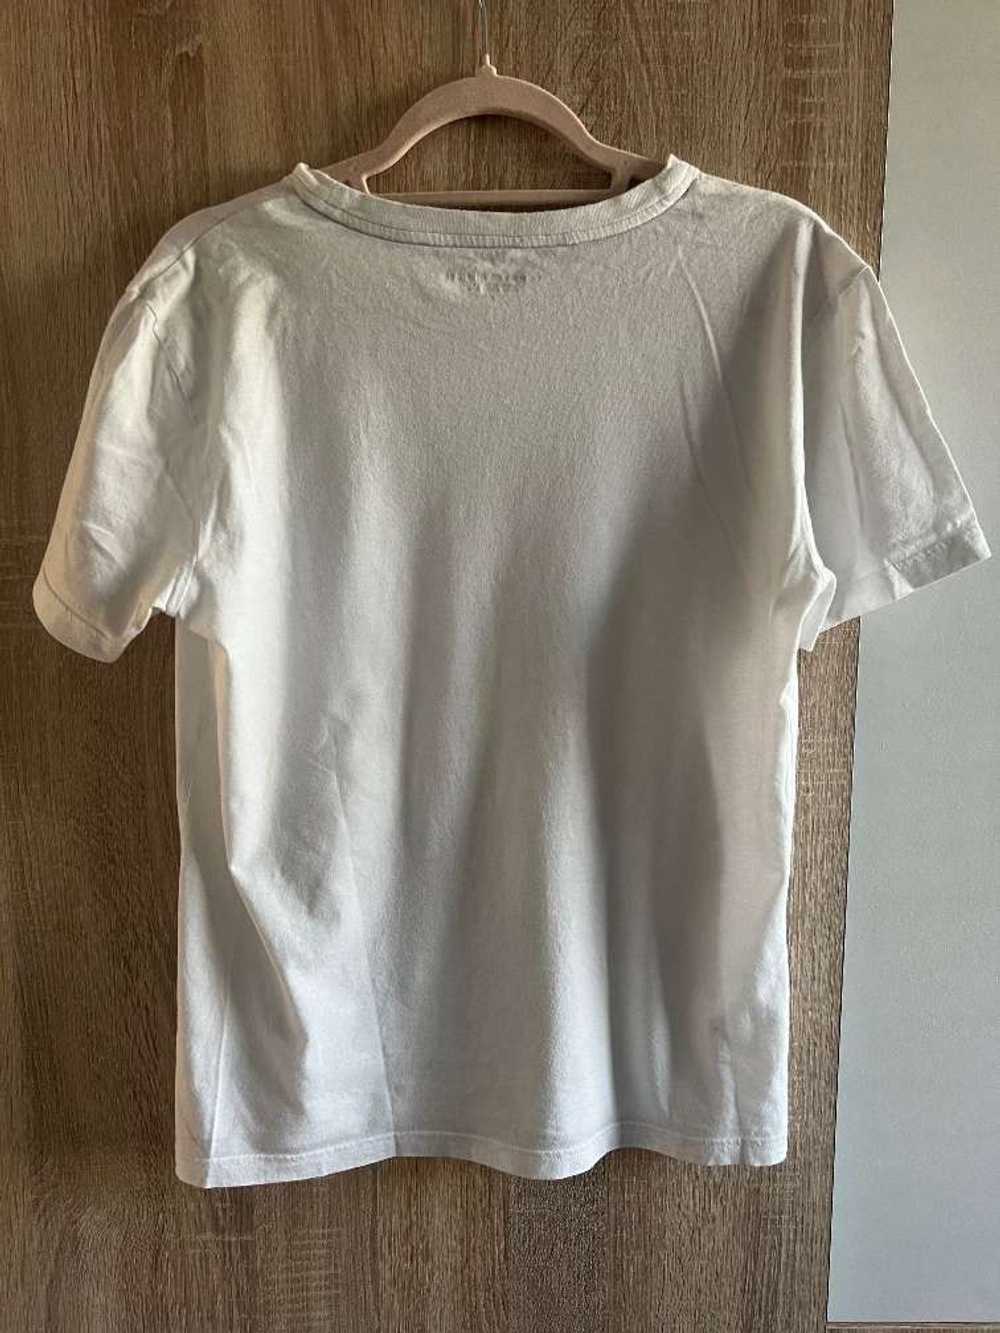 Tommy Hilfiger Tommy Hilfiger men’s T-Shirt. Size… - image 2